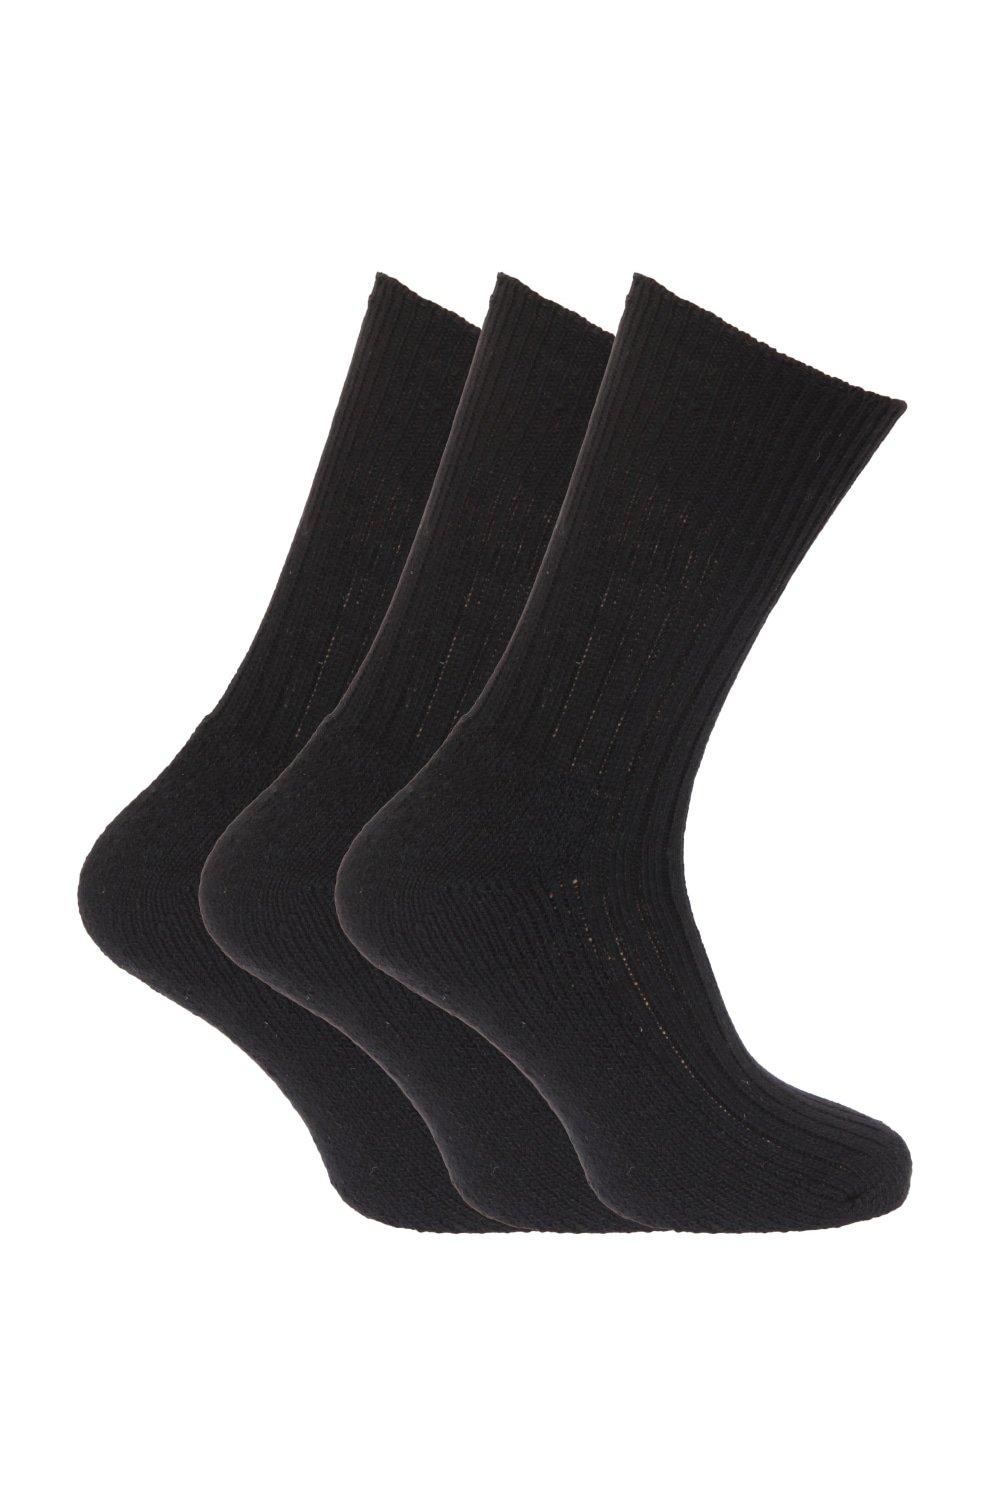 Wool Blend Non Elastic Top Light Hold Socks (Pack Of 3)